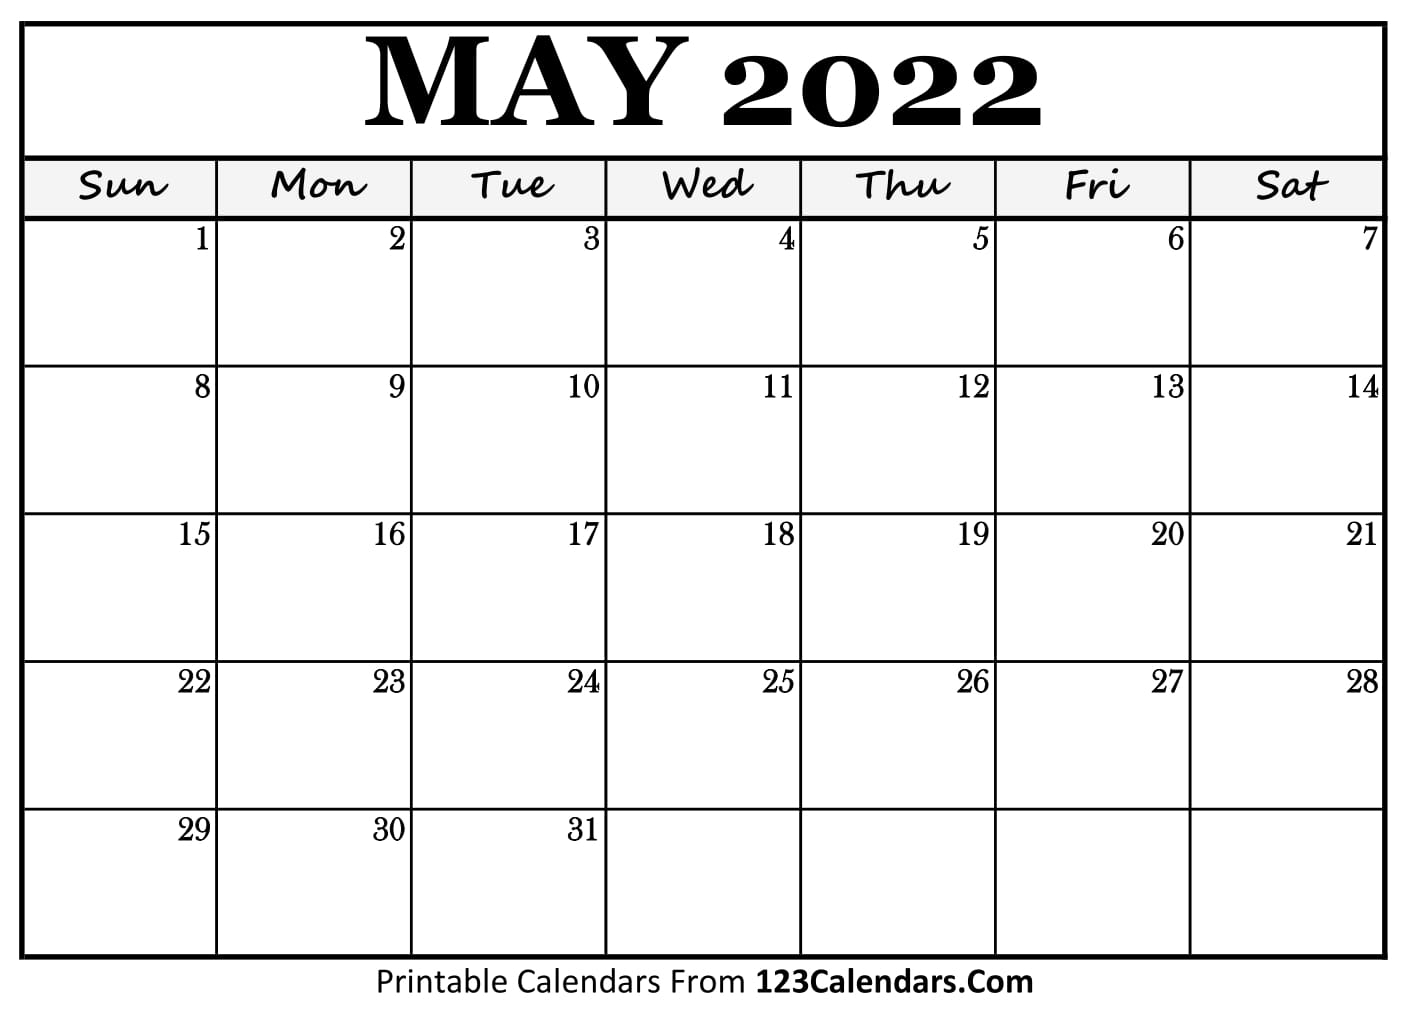 May Calendar 2022 Printable Printable May 2022 Calendar Templates - 123Calendars.com